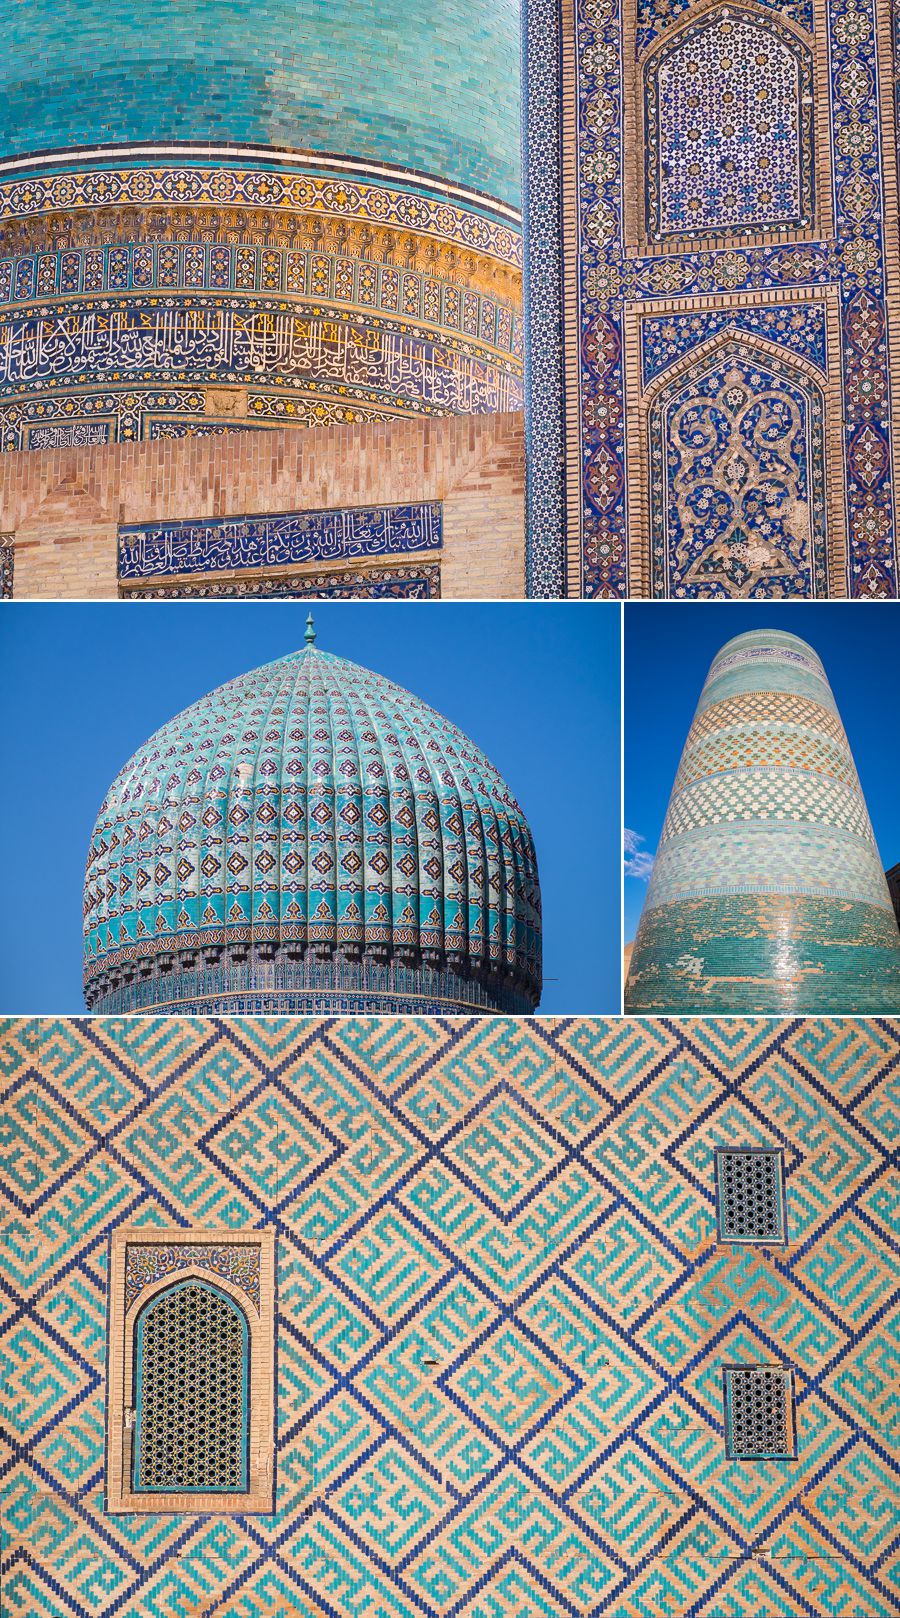 Land of blue and turquoise - Uzbekistan